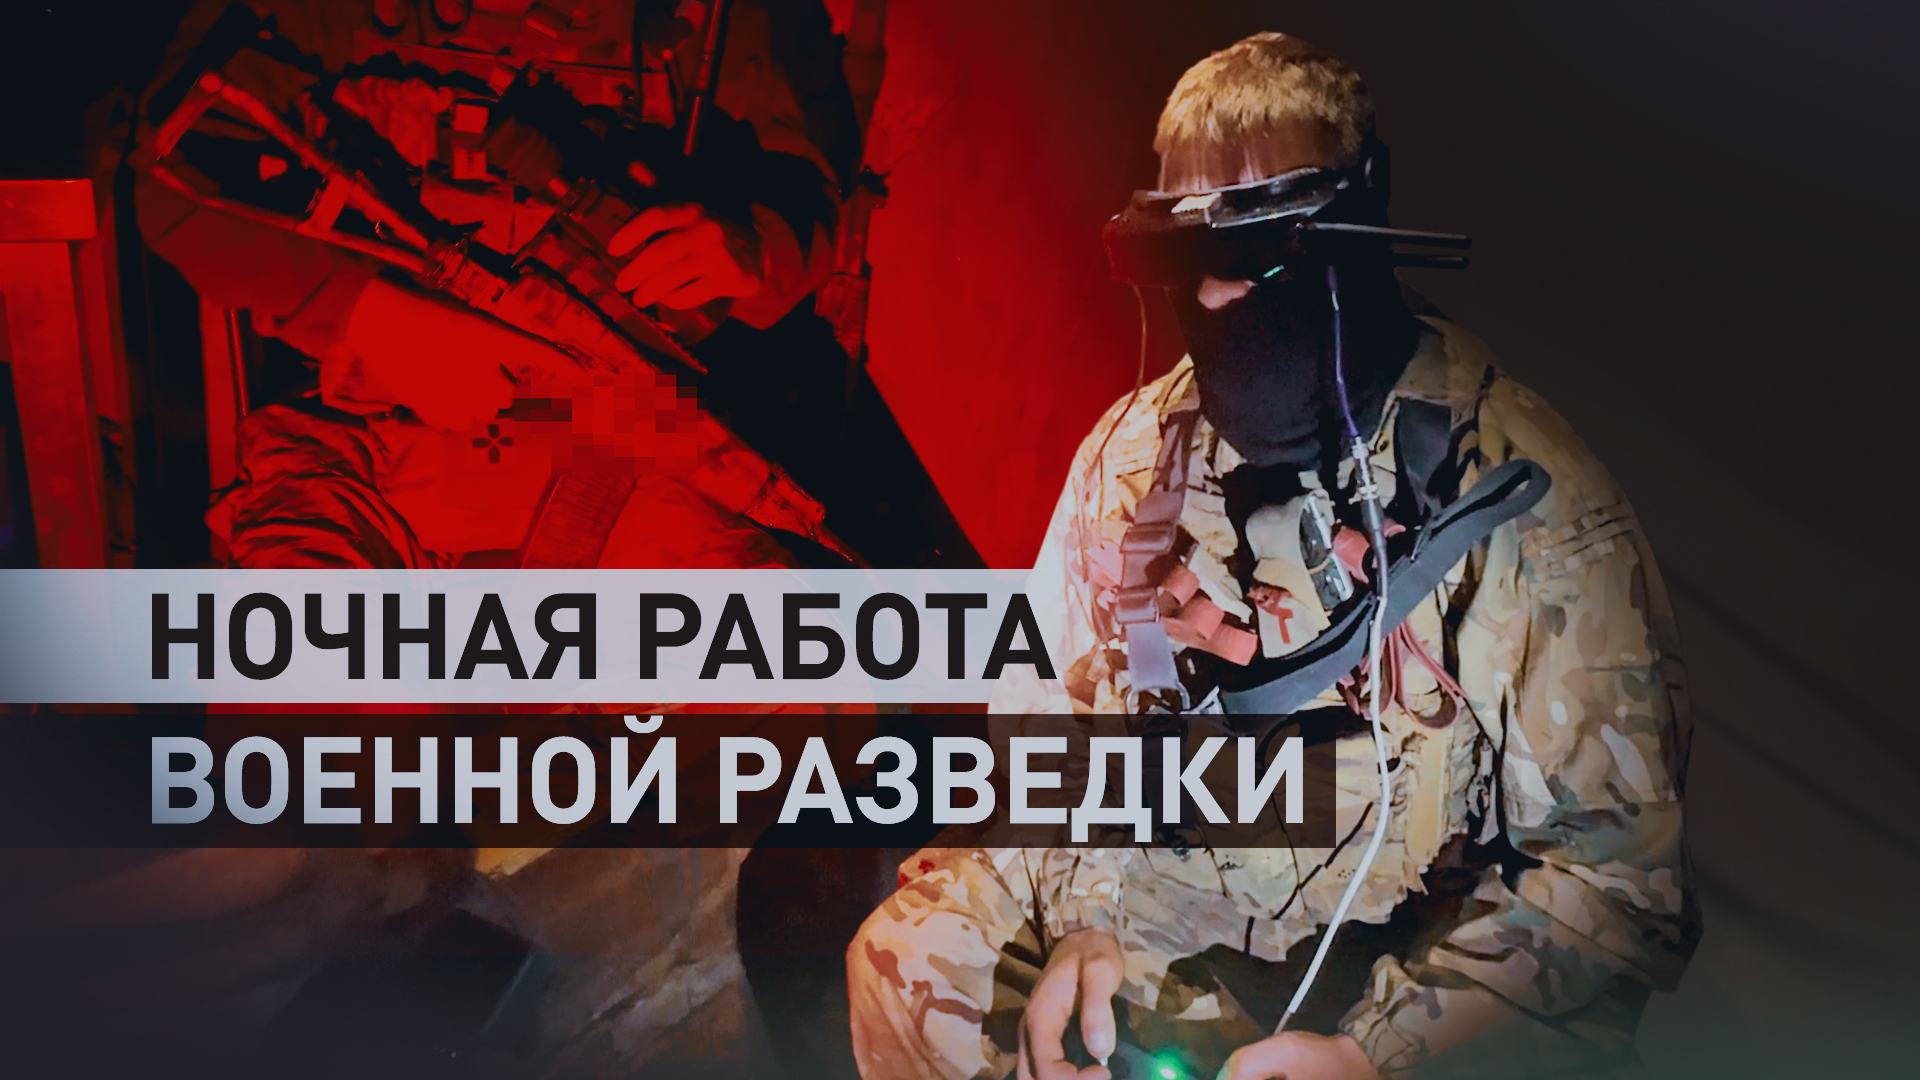 Шаг за шагом оттесняют врага: бойцы спецподразделения разведки ВС РФ идут за границы Тоненького